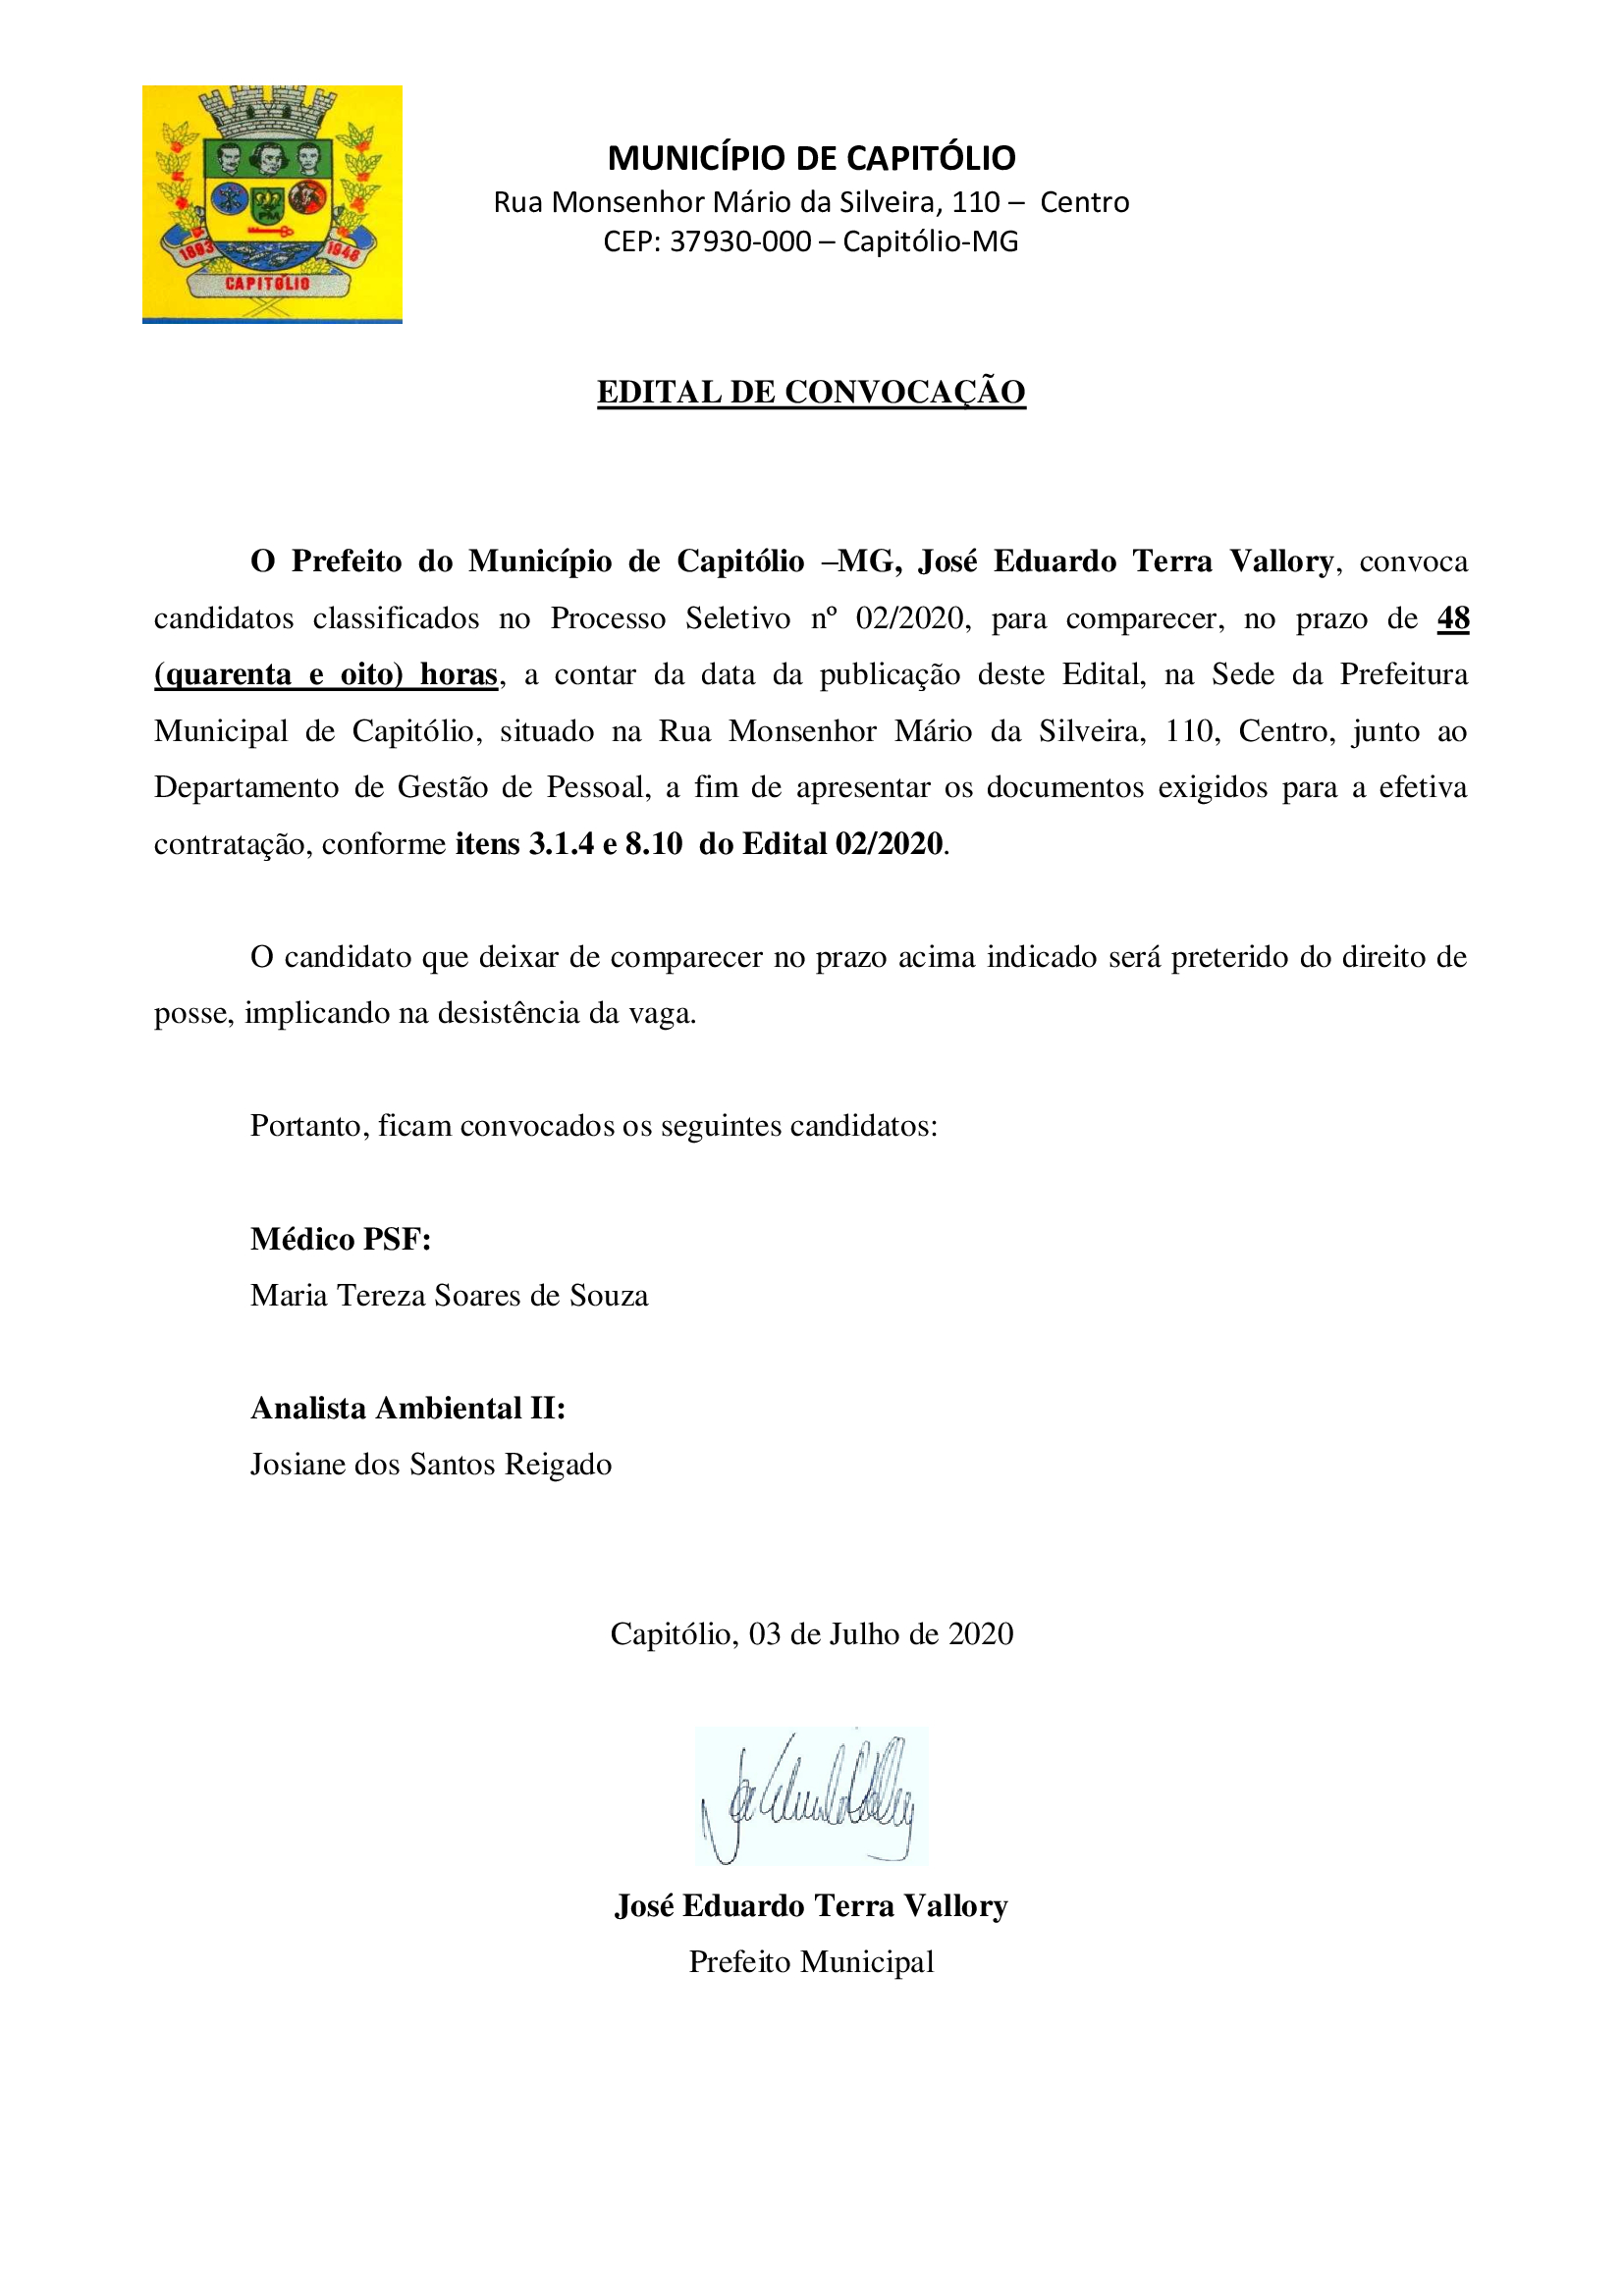 EDITAL-DE-CONVOCAÇÃO-MÉDICO-PSF-E-ANALISTA-AMBIENTAL-II